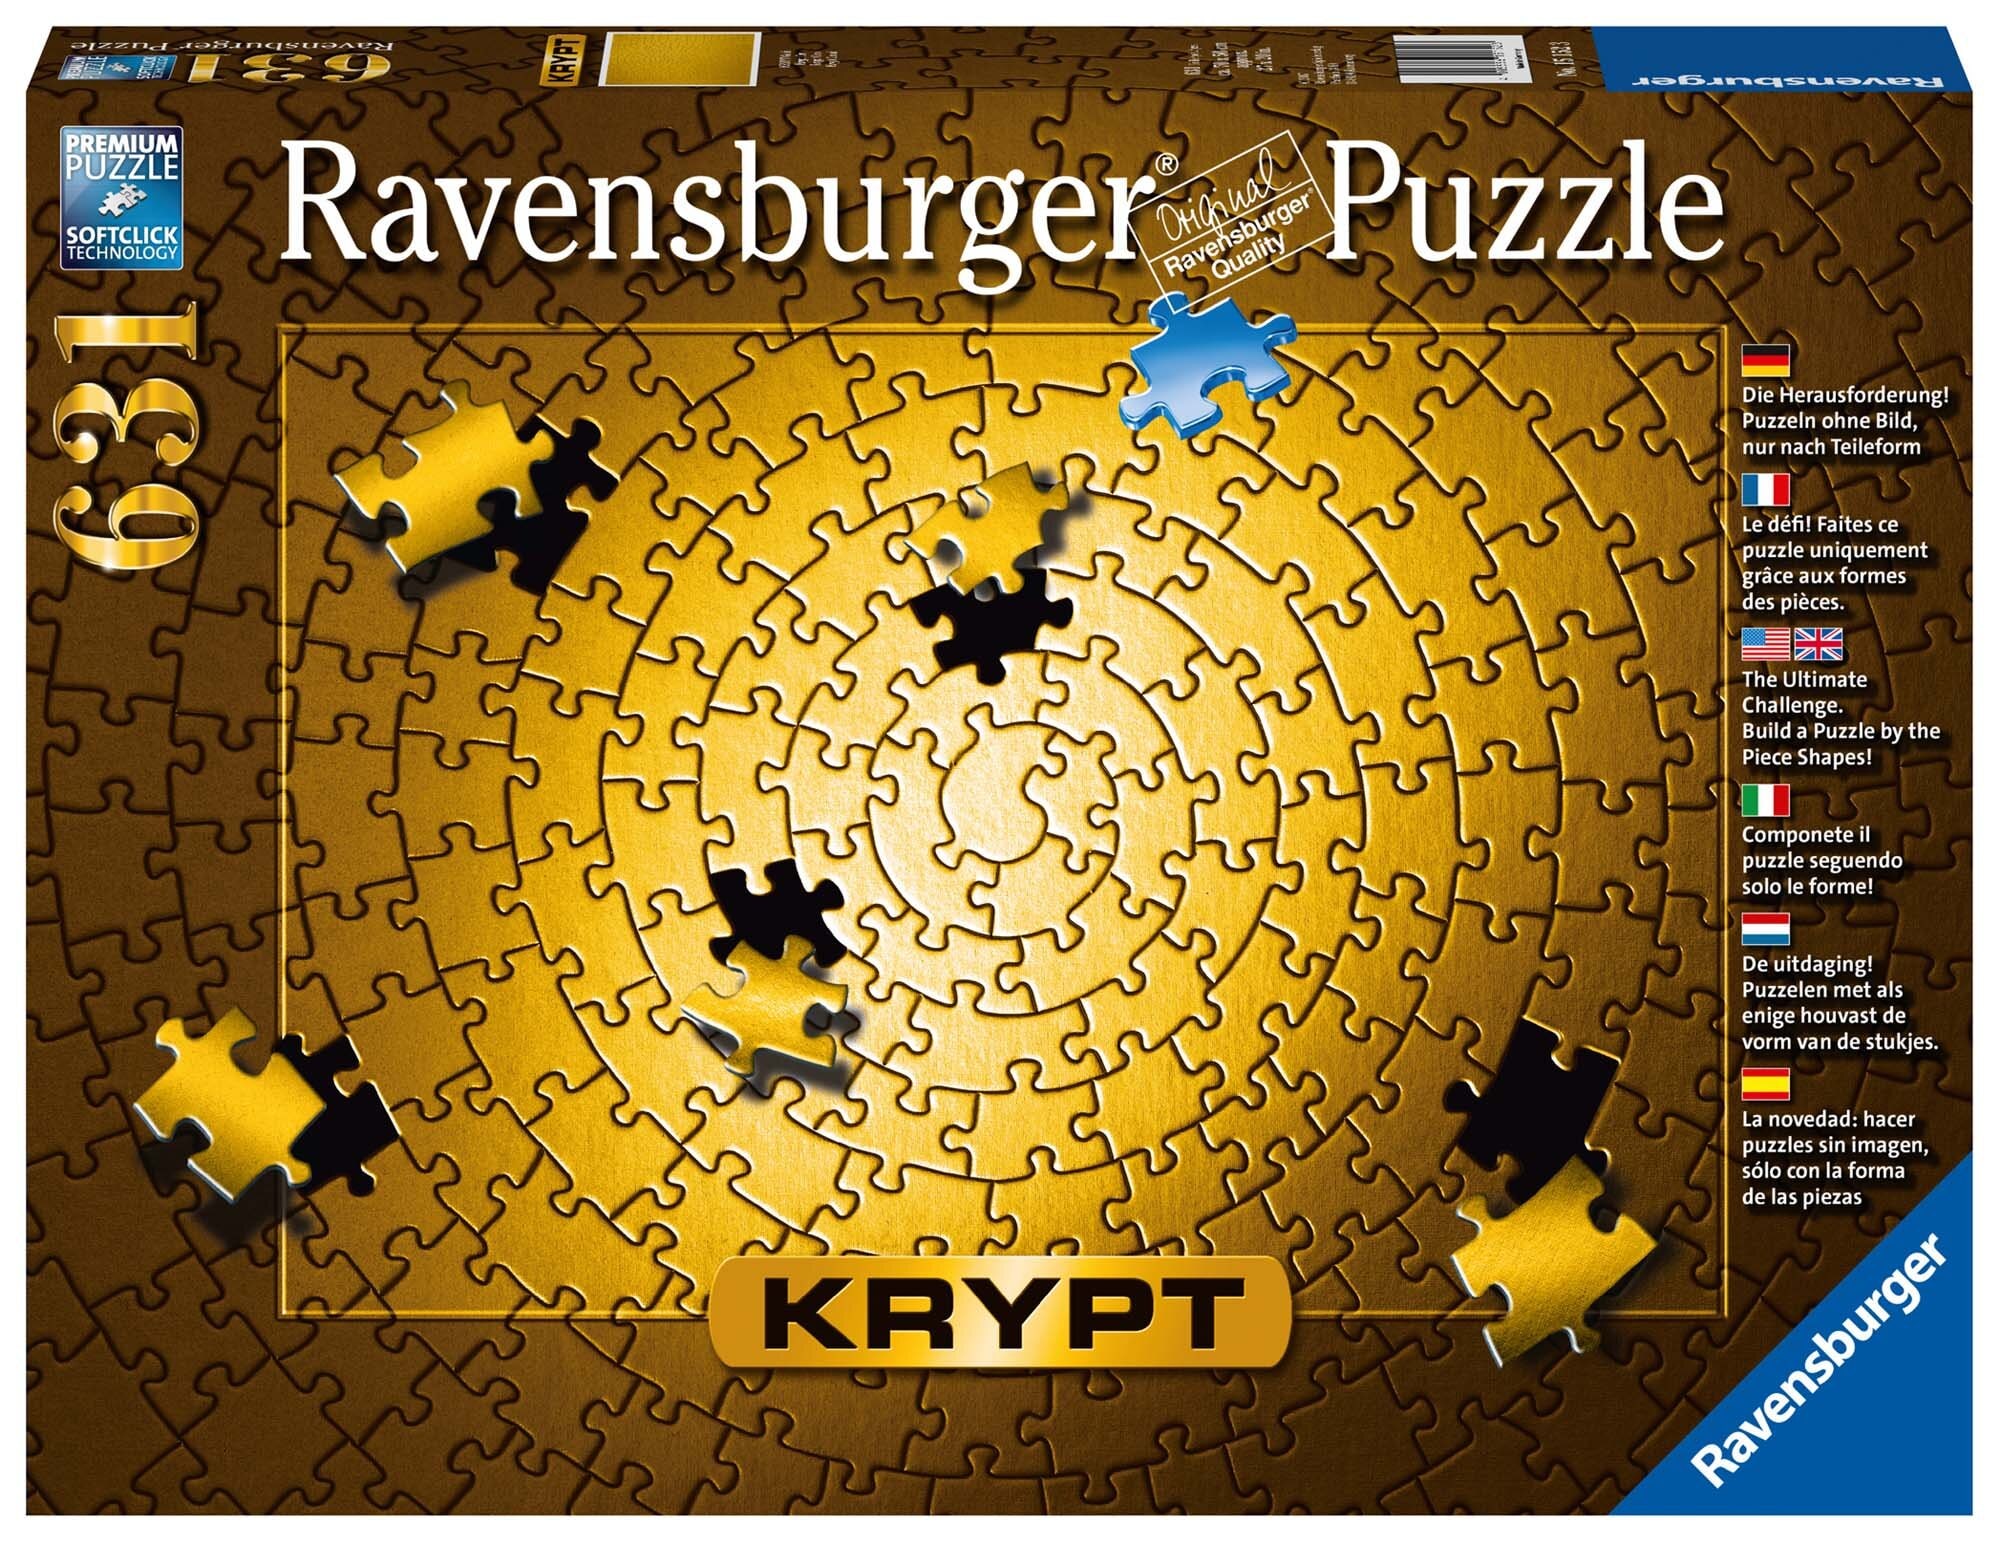 Ravensburger Puzzle - Krypt Gold 631 Teile